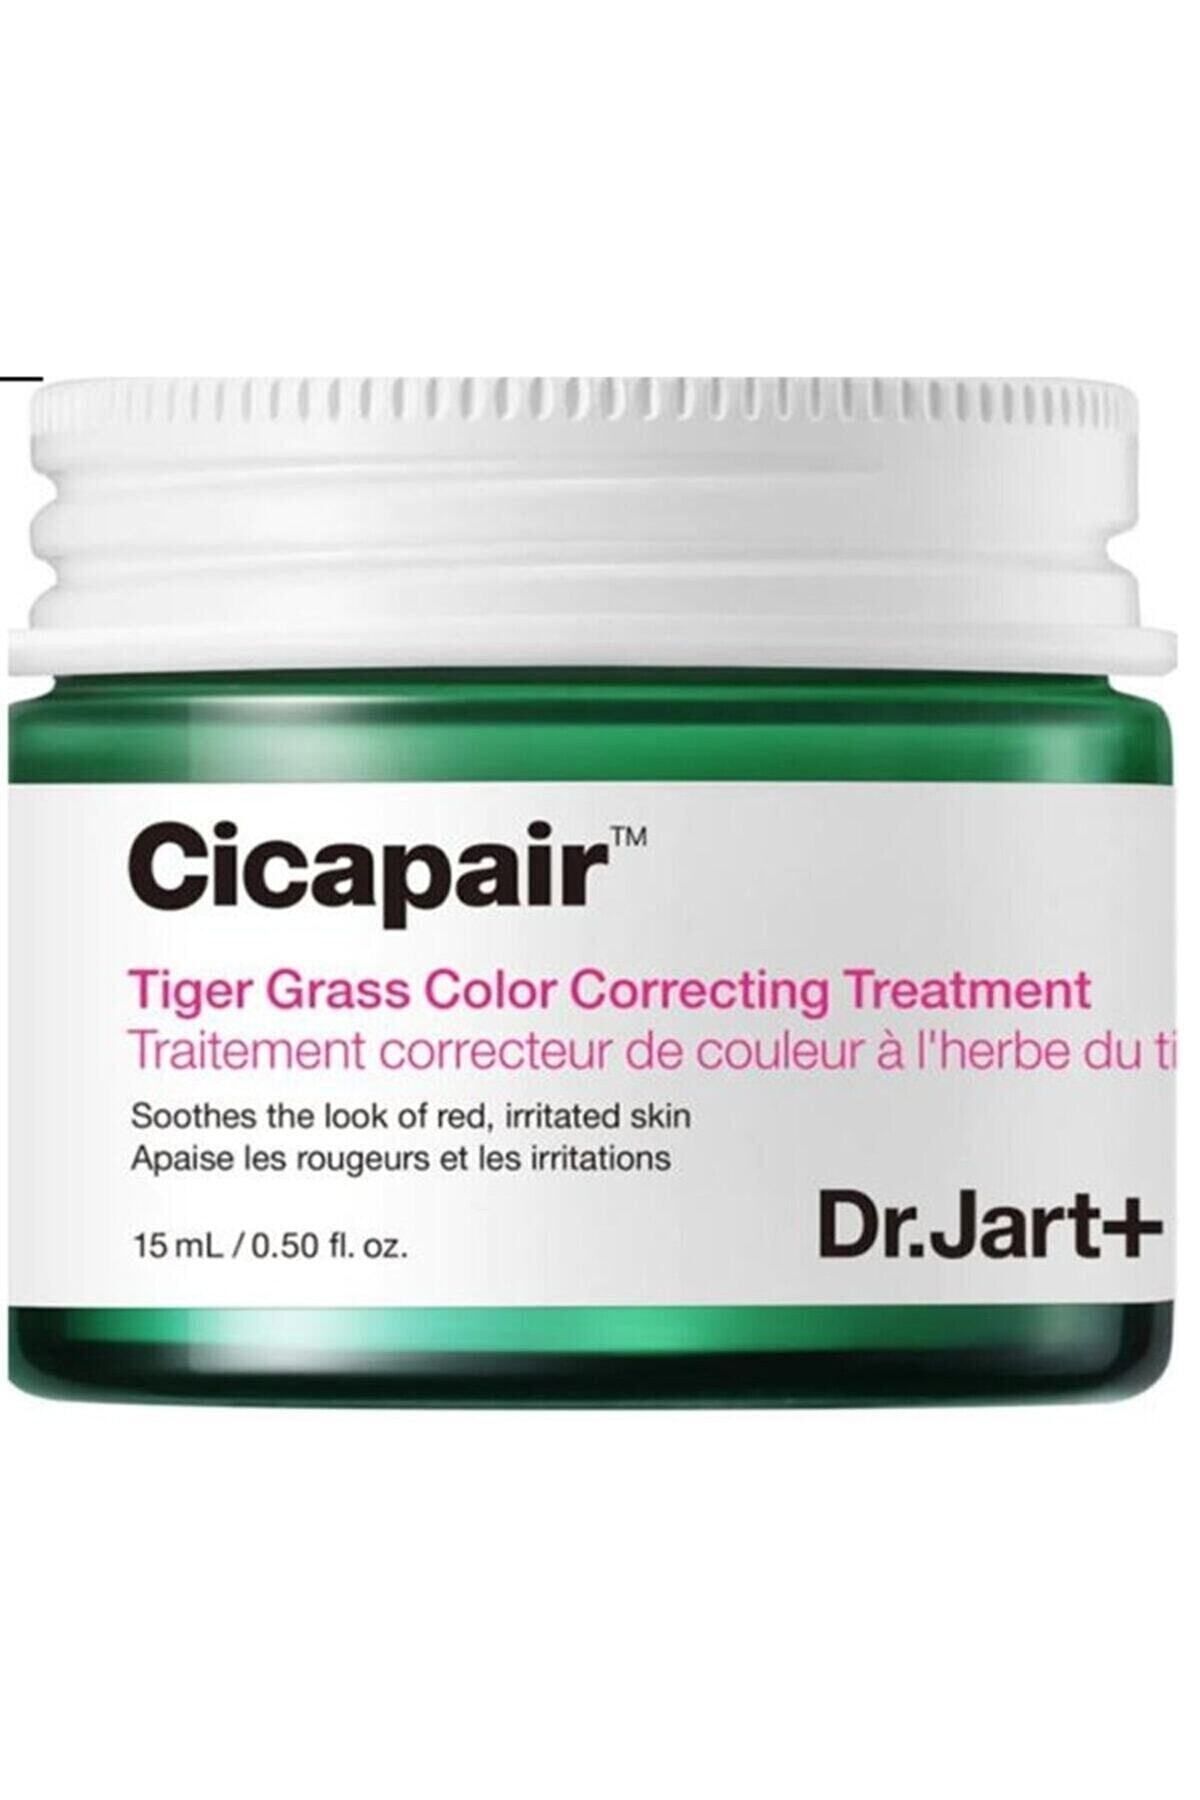 Dr. Jart+ Cicapair Tiger Grass Color Correcting Treatment Cilt Tonu Eşitleyici Bakım Kremi 15 Ml